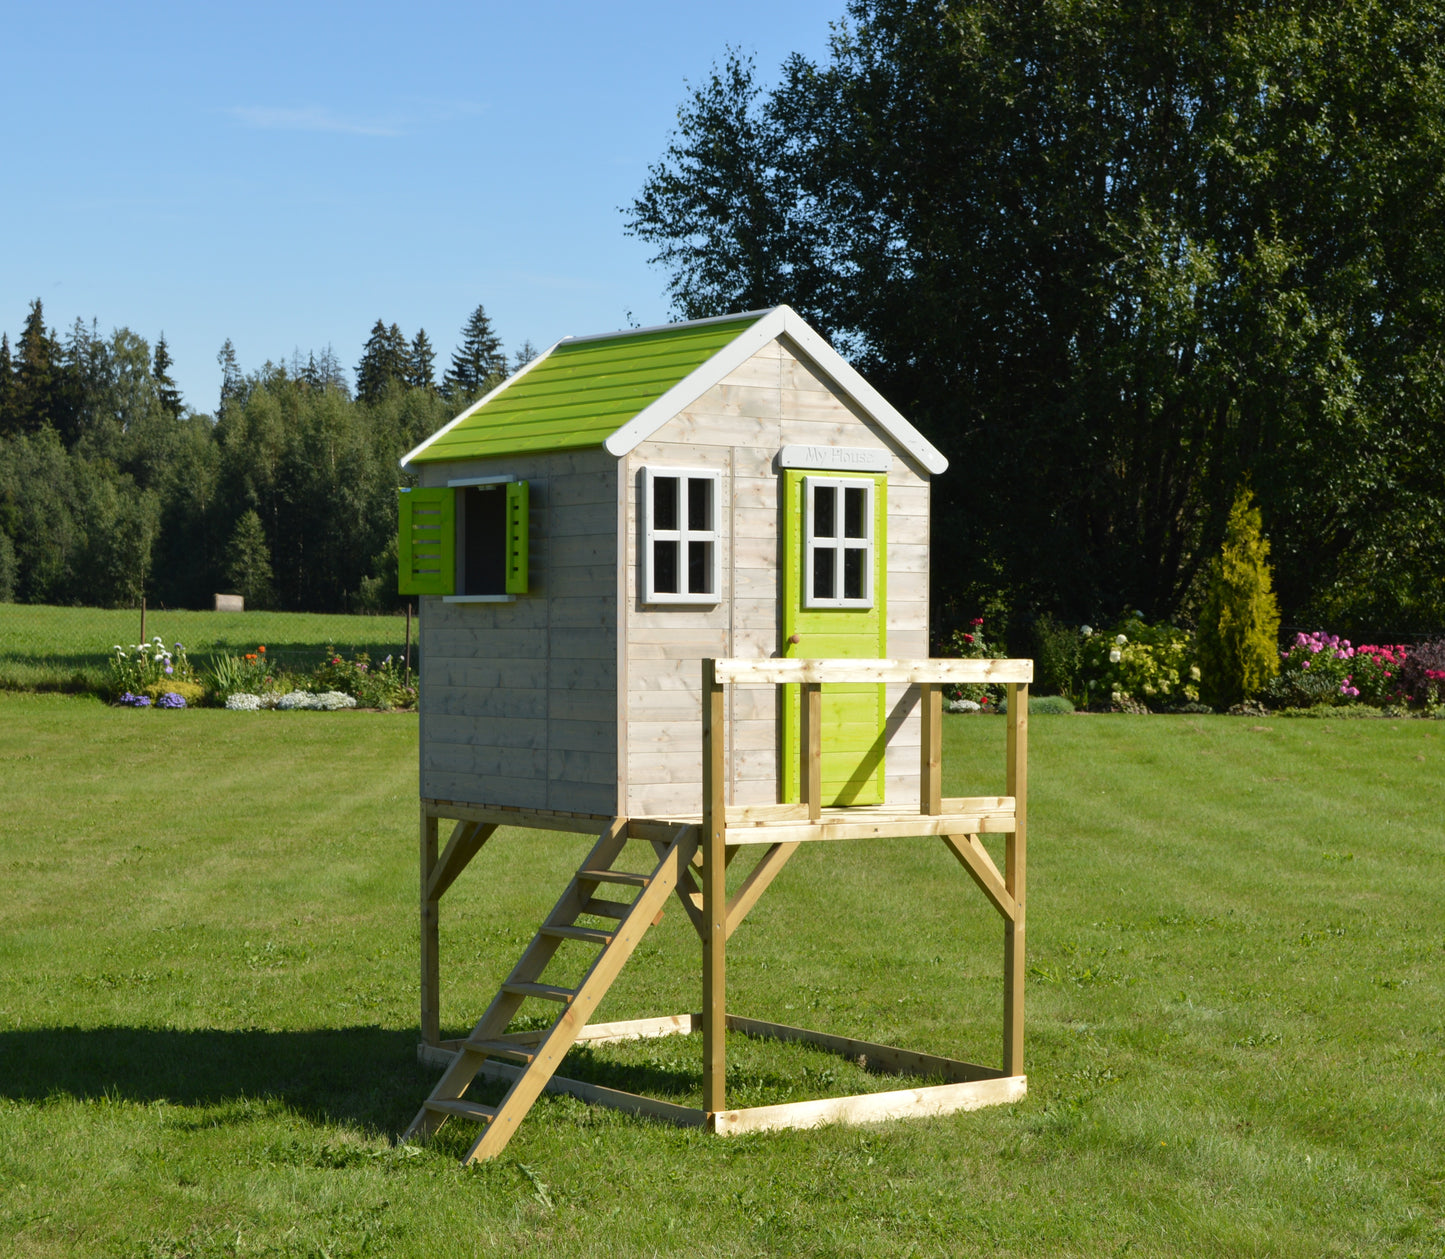 M21L-KT Garden playhouse with kitchenette